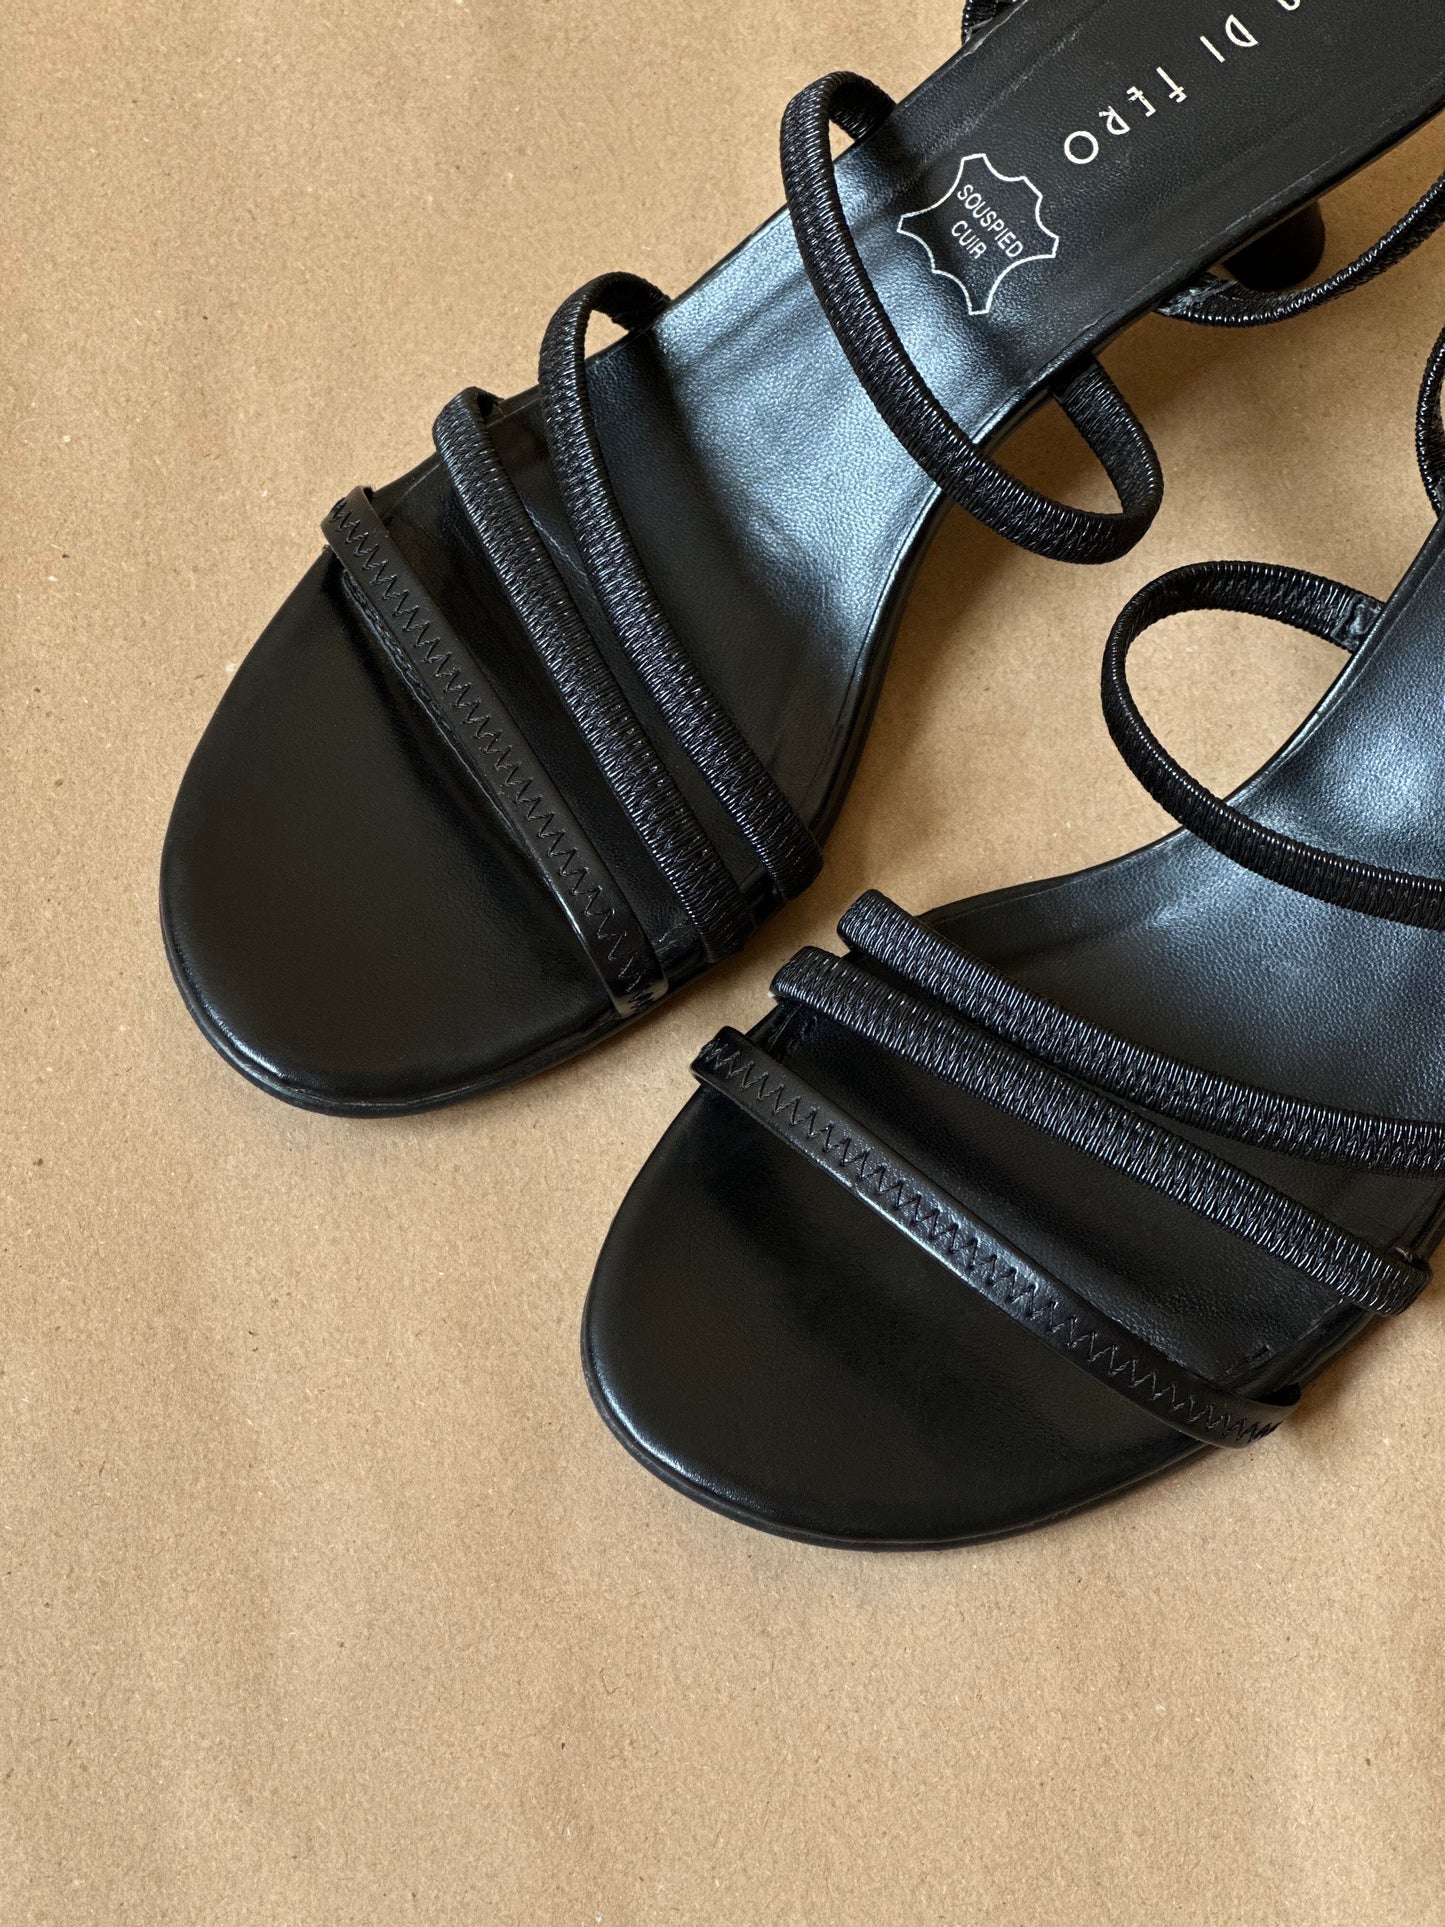 Vintage Black Strappy Sandals